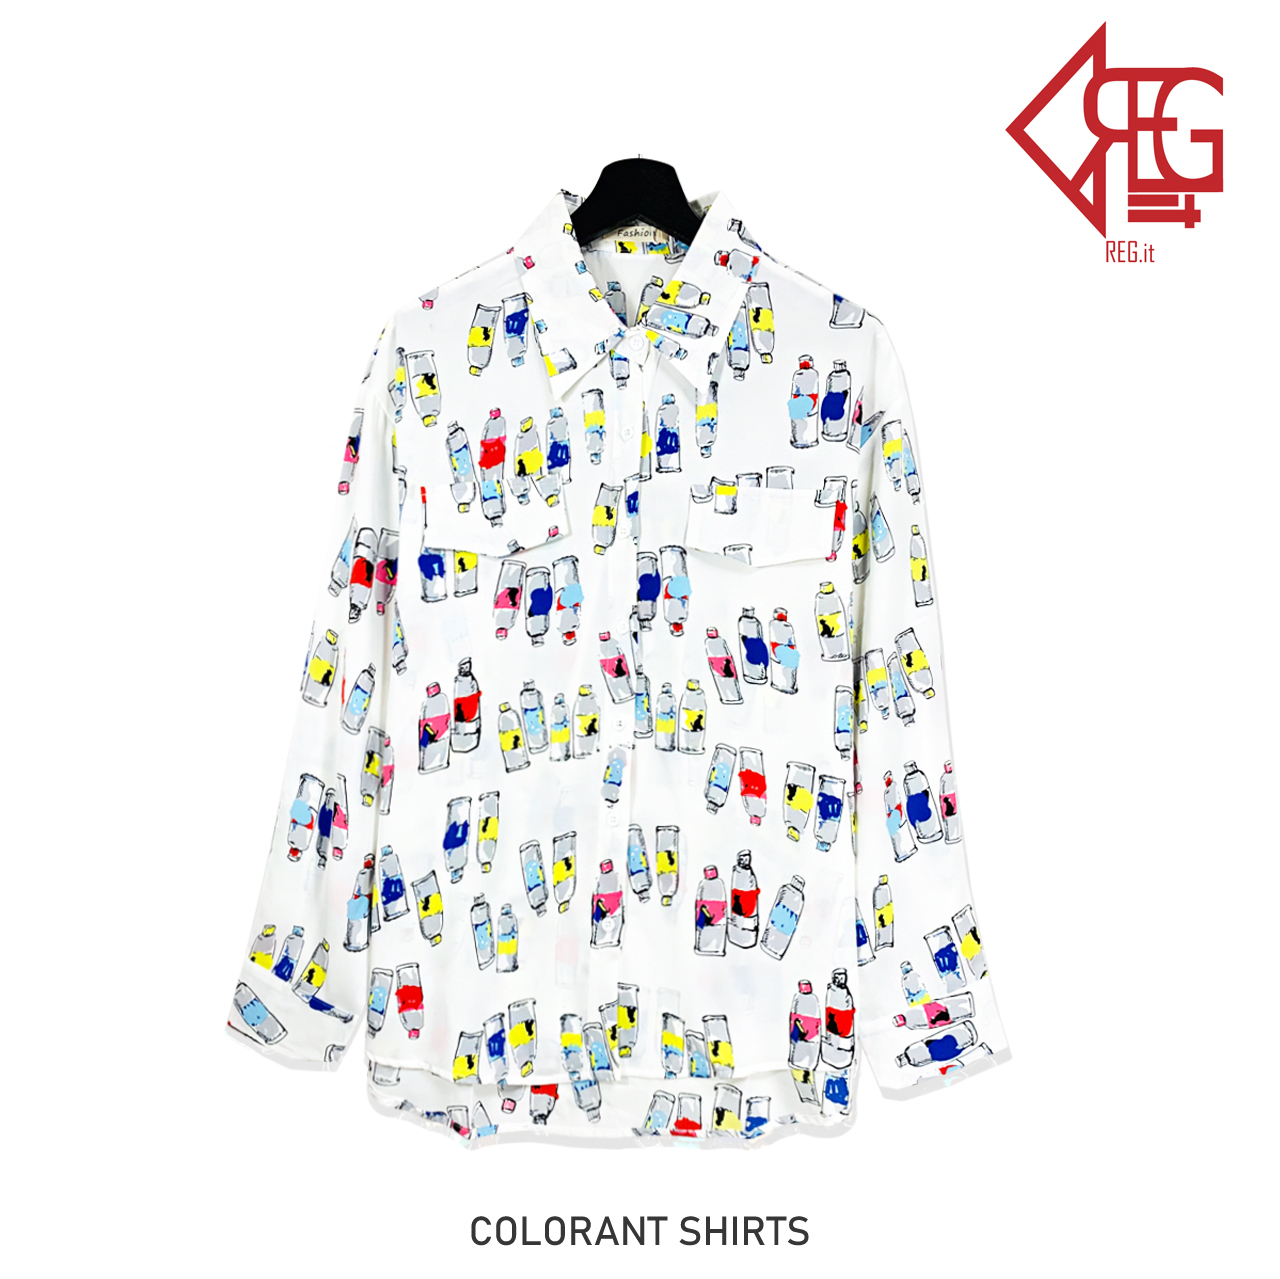 Regit 即納 Colorant Shirts 韓国ファッション 韓国服 かわいいブラウス かわいいシャツ おしゃれ かわいい ユニーク 個性的 Regit